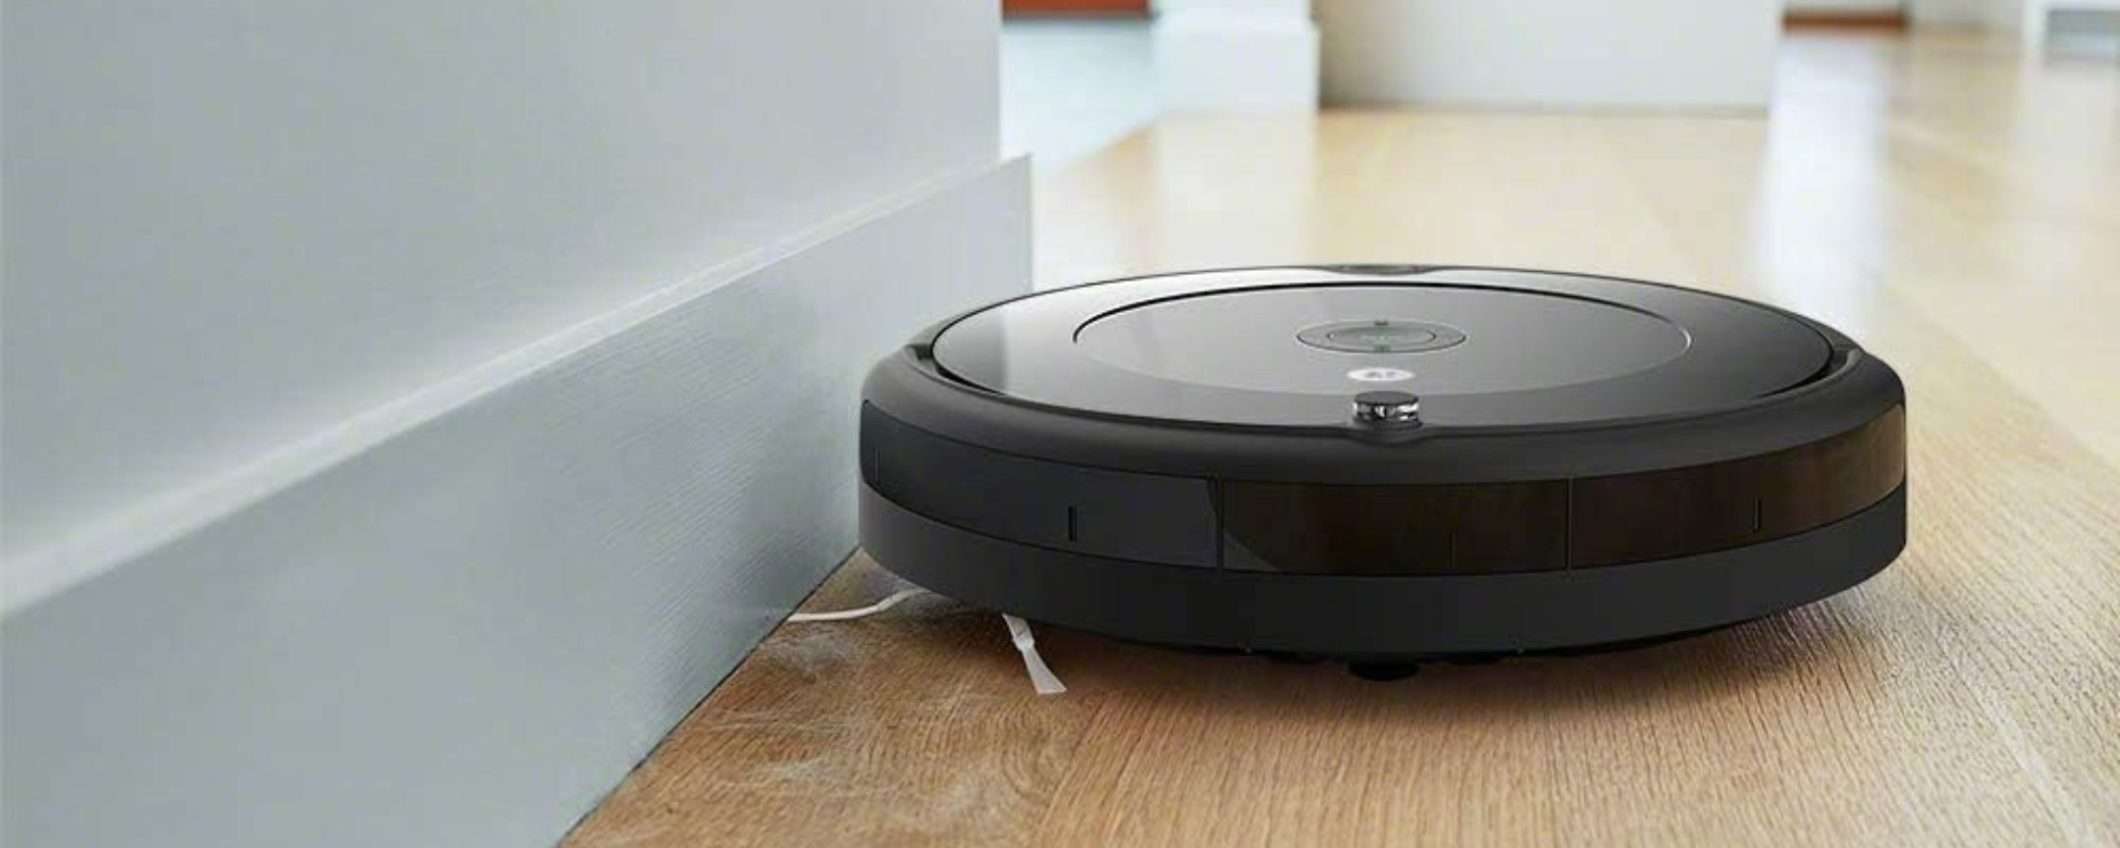 199€ su Amazon per iRobot Roomba 692: ecco il robot aspirapolvere TOP